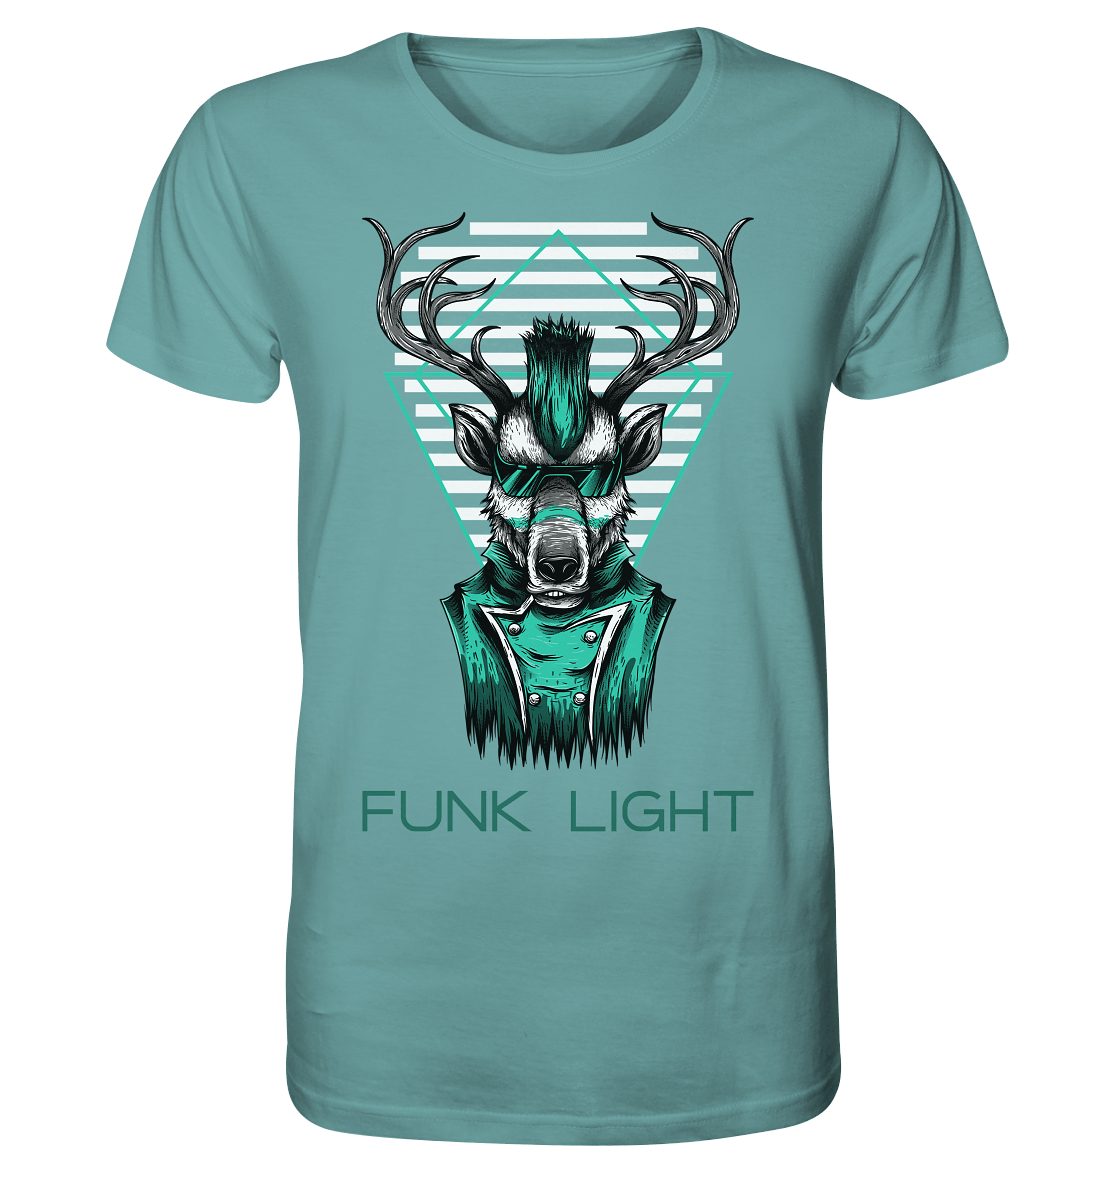 T-Shirt coole bilder von funk light Elch